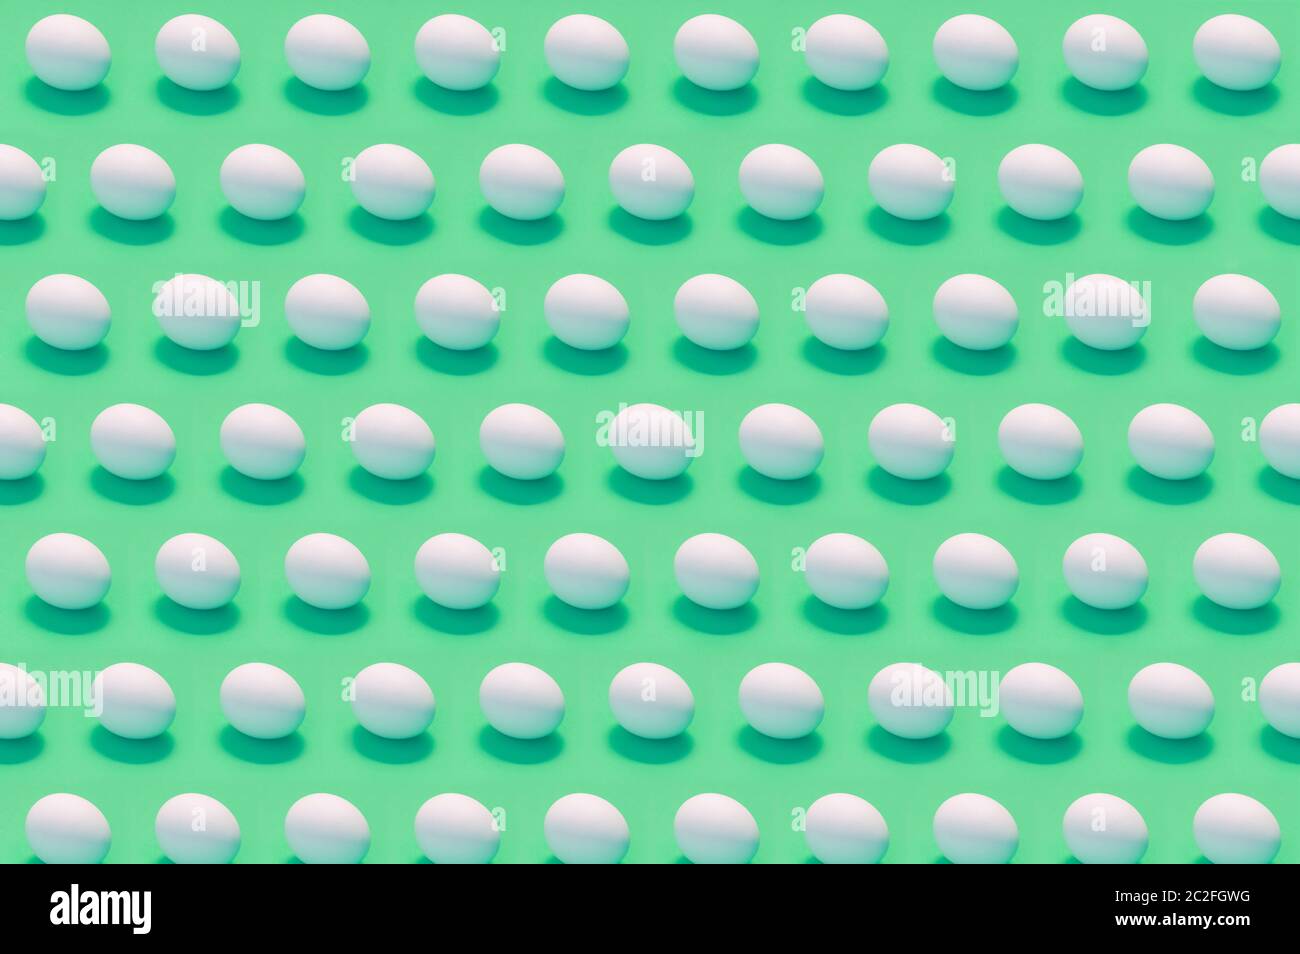 Viele weiße Eier auf einfarbigem Hintergrund Stockfoto